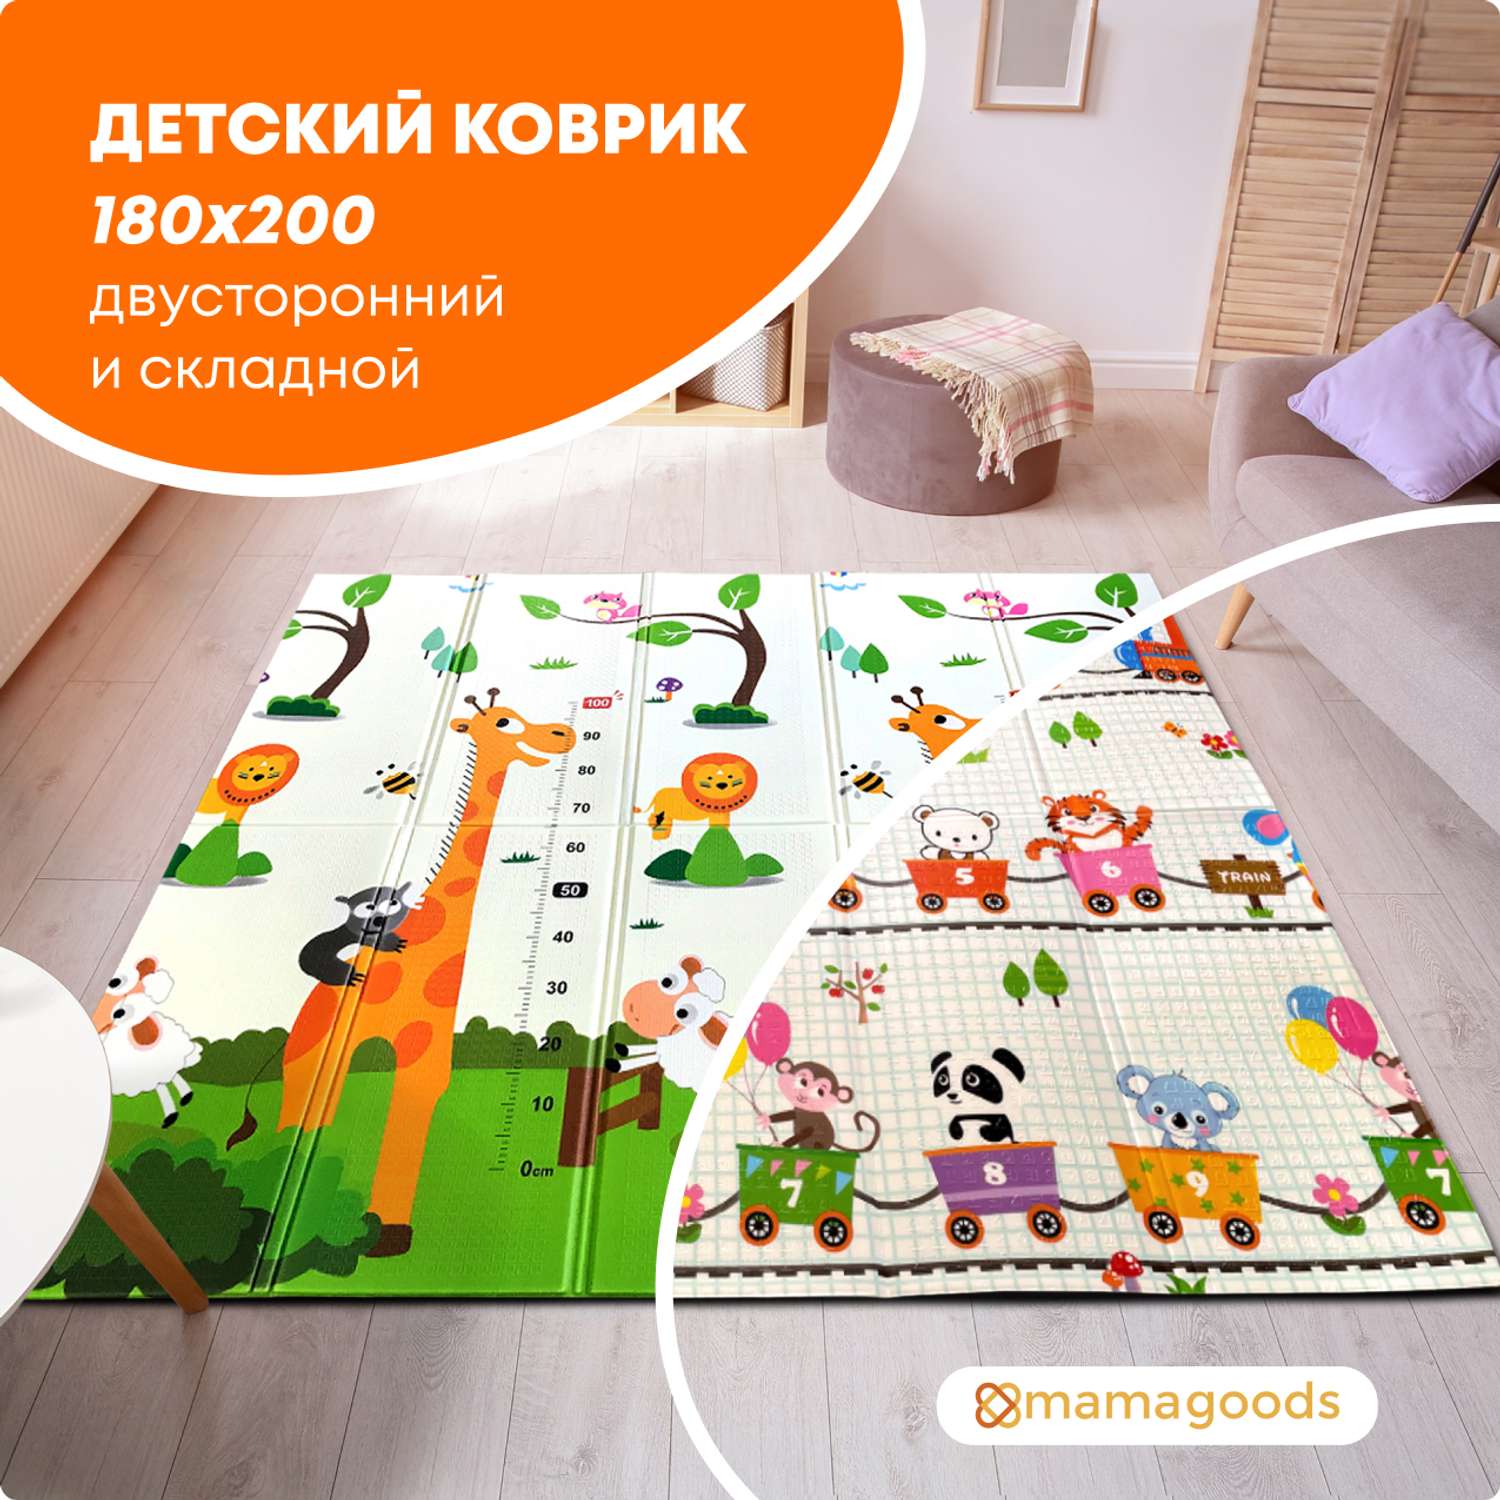 Развивающий коврик детский Mamagoods для ползания складной игровой 180х200 см Поезд и Жирафы - фото 1